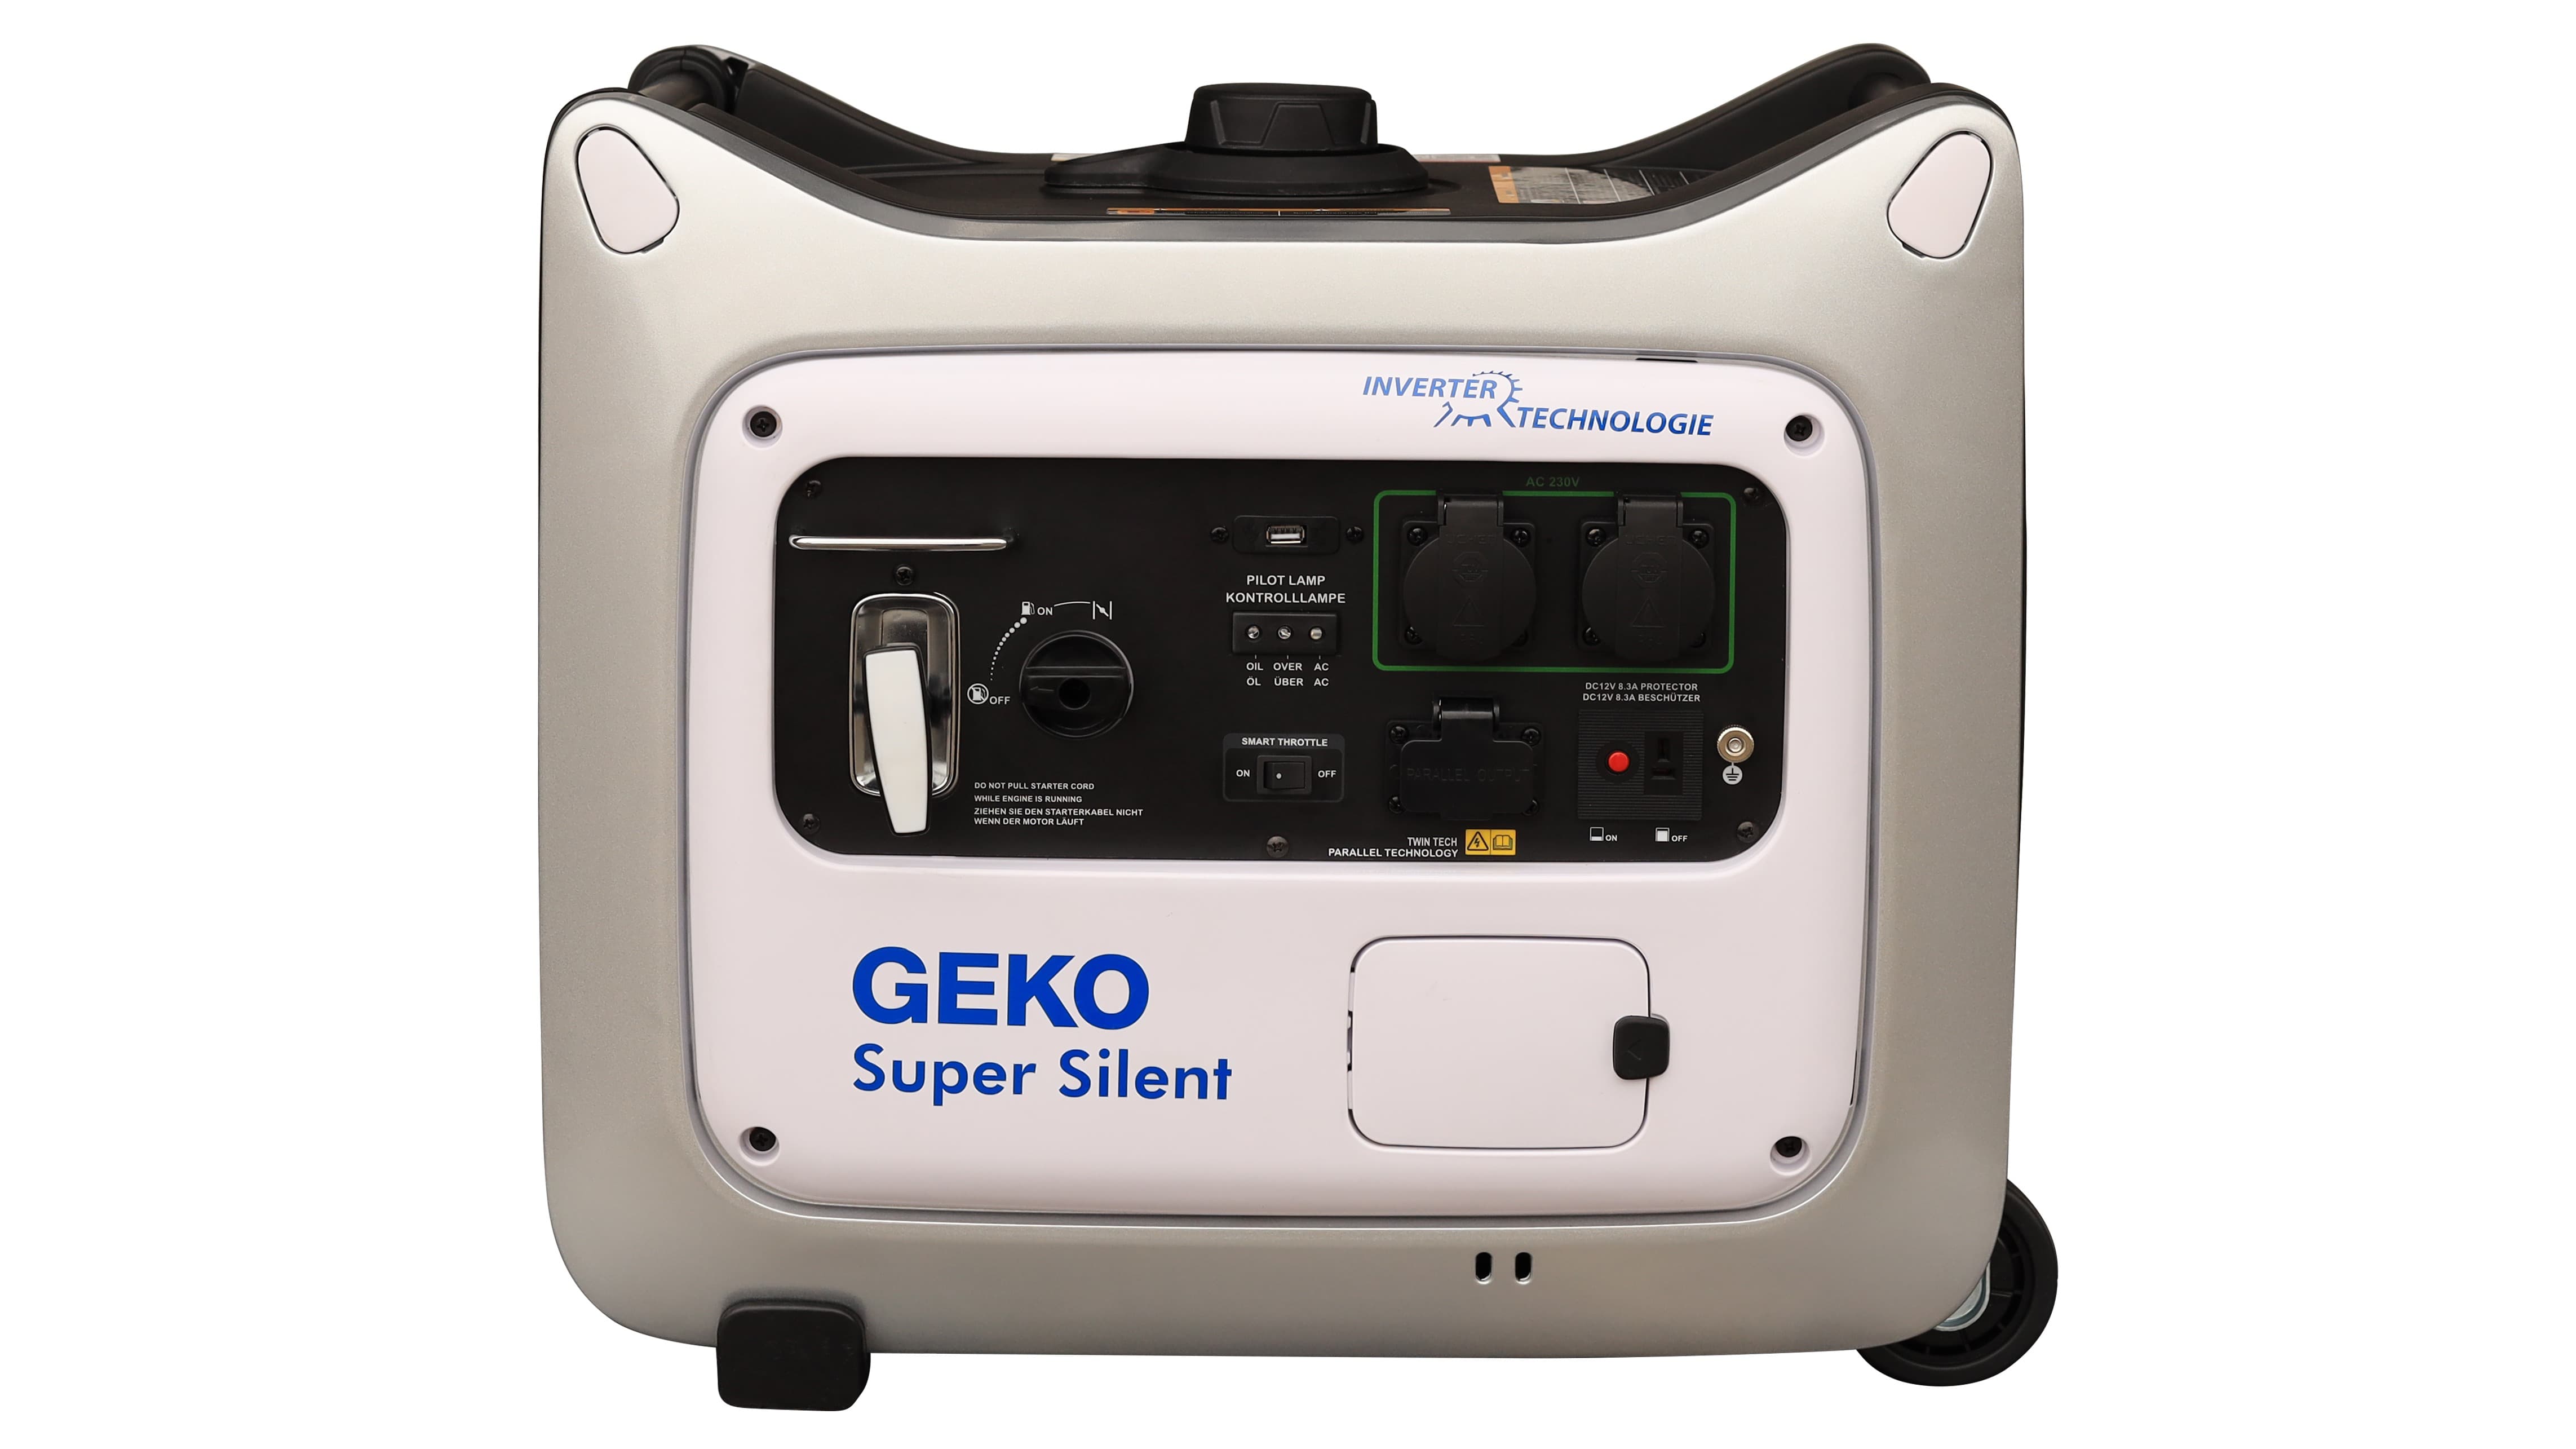 GEKO 3015 Super Silent, das Kraftpaket das man kaum hört.
Parallelbetrieb möglich